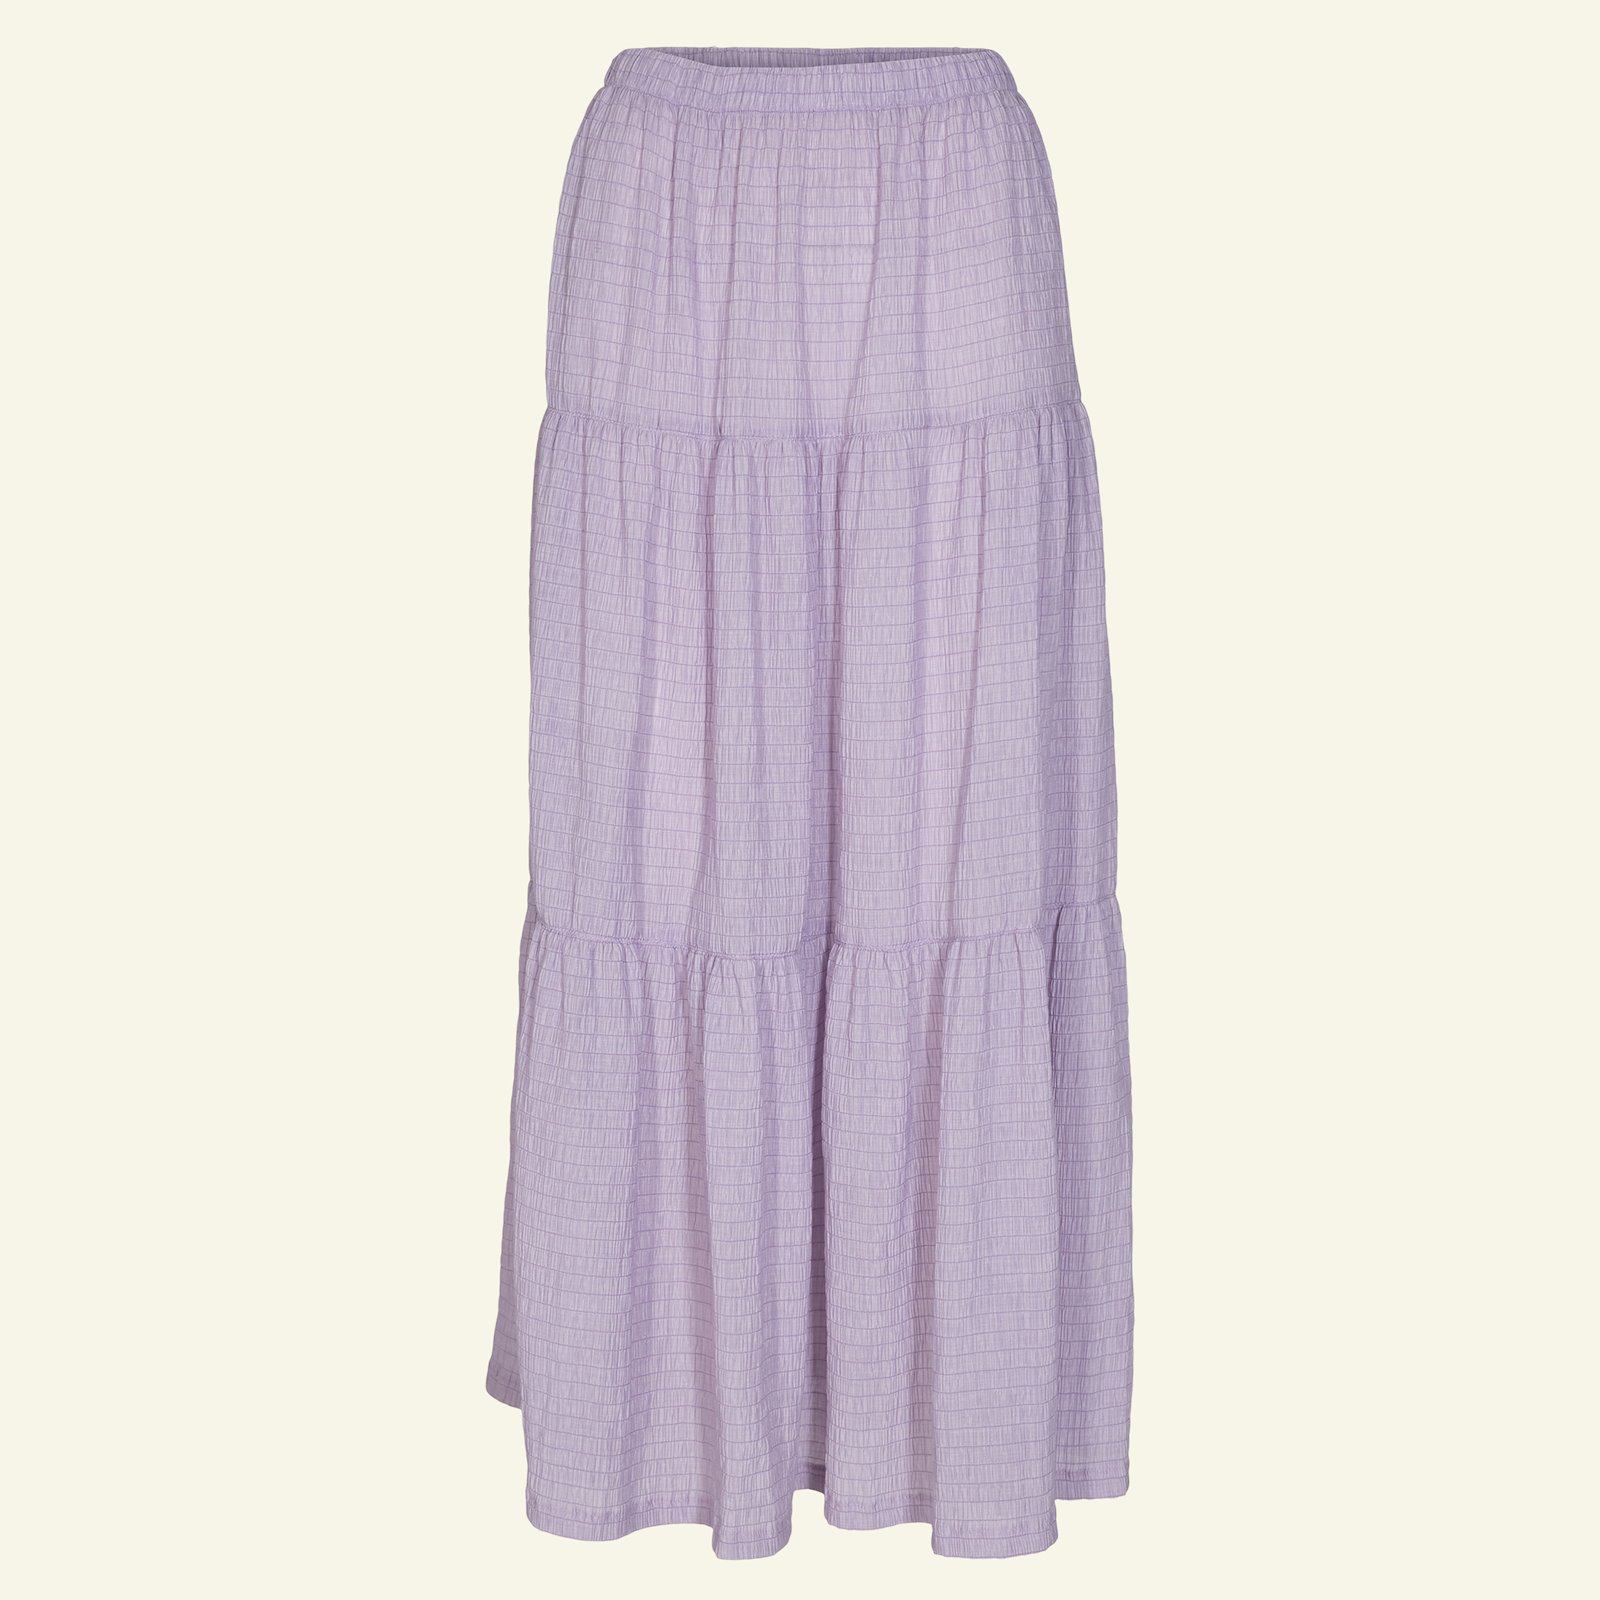 Split level skirt, XL p21046_560260_sskit